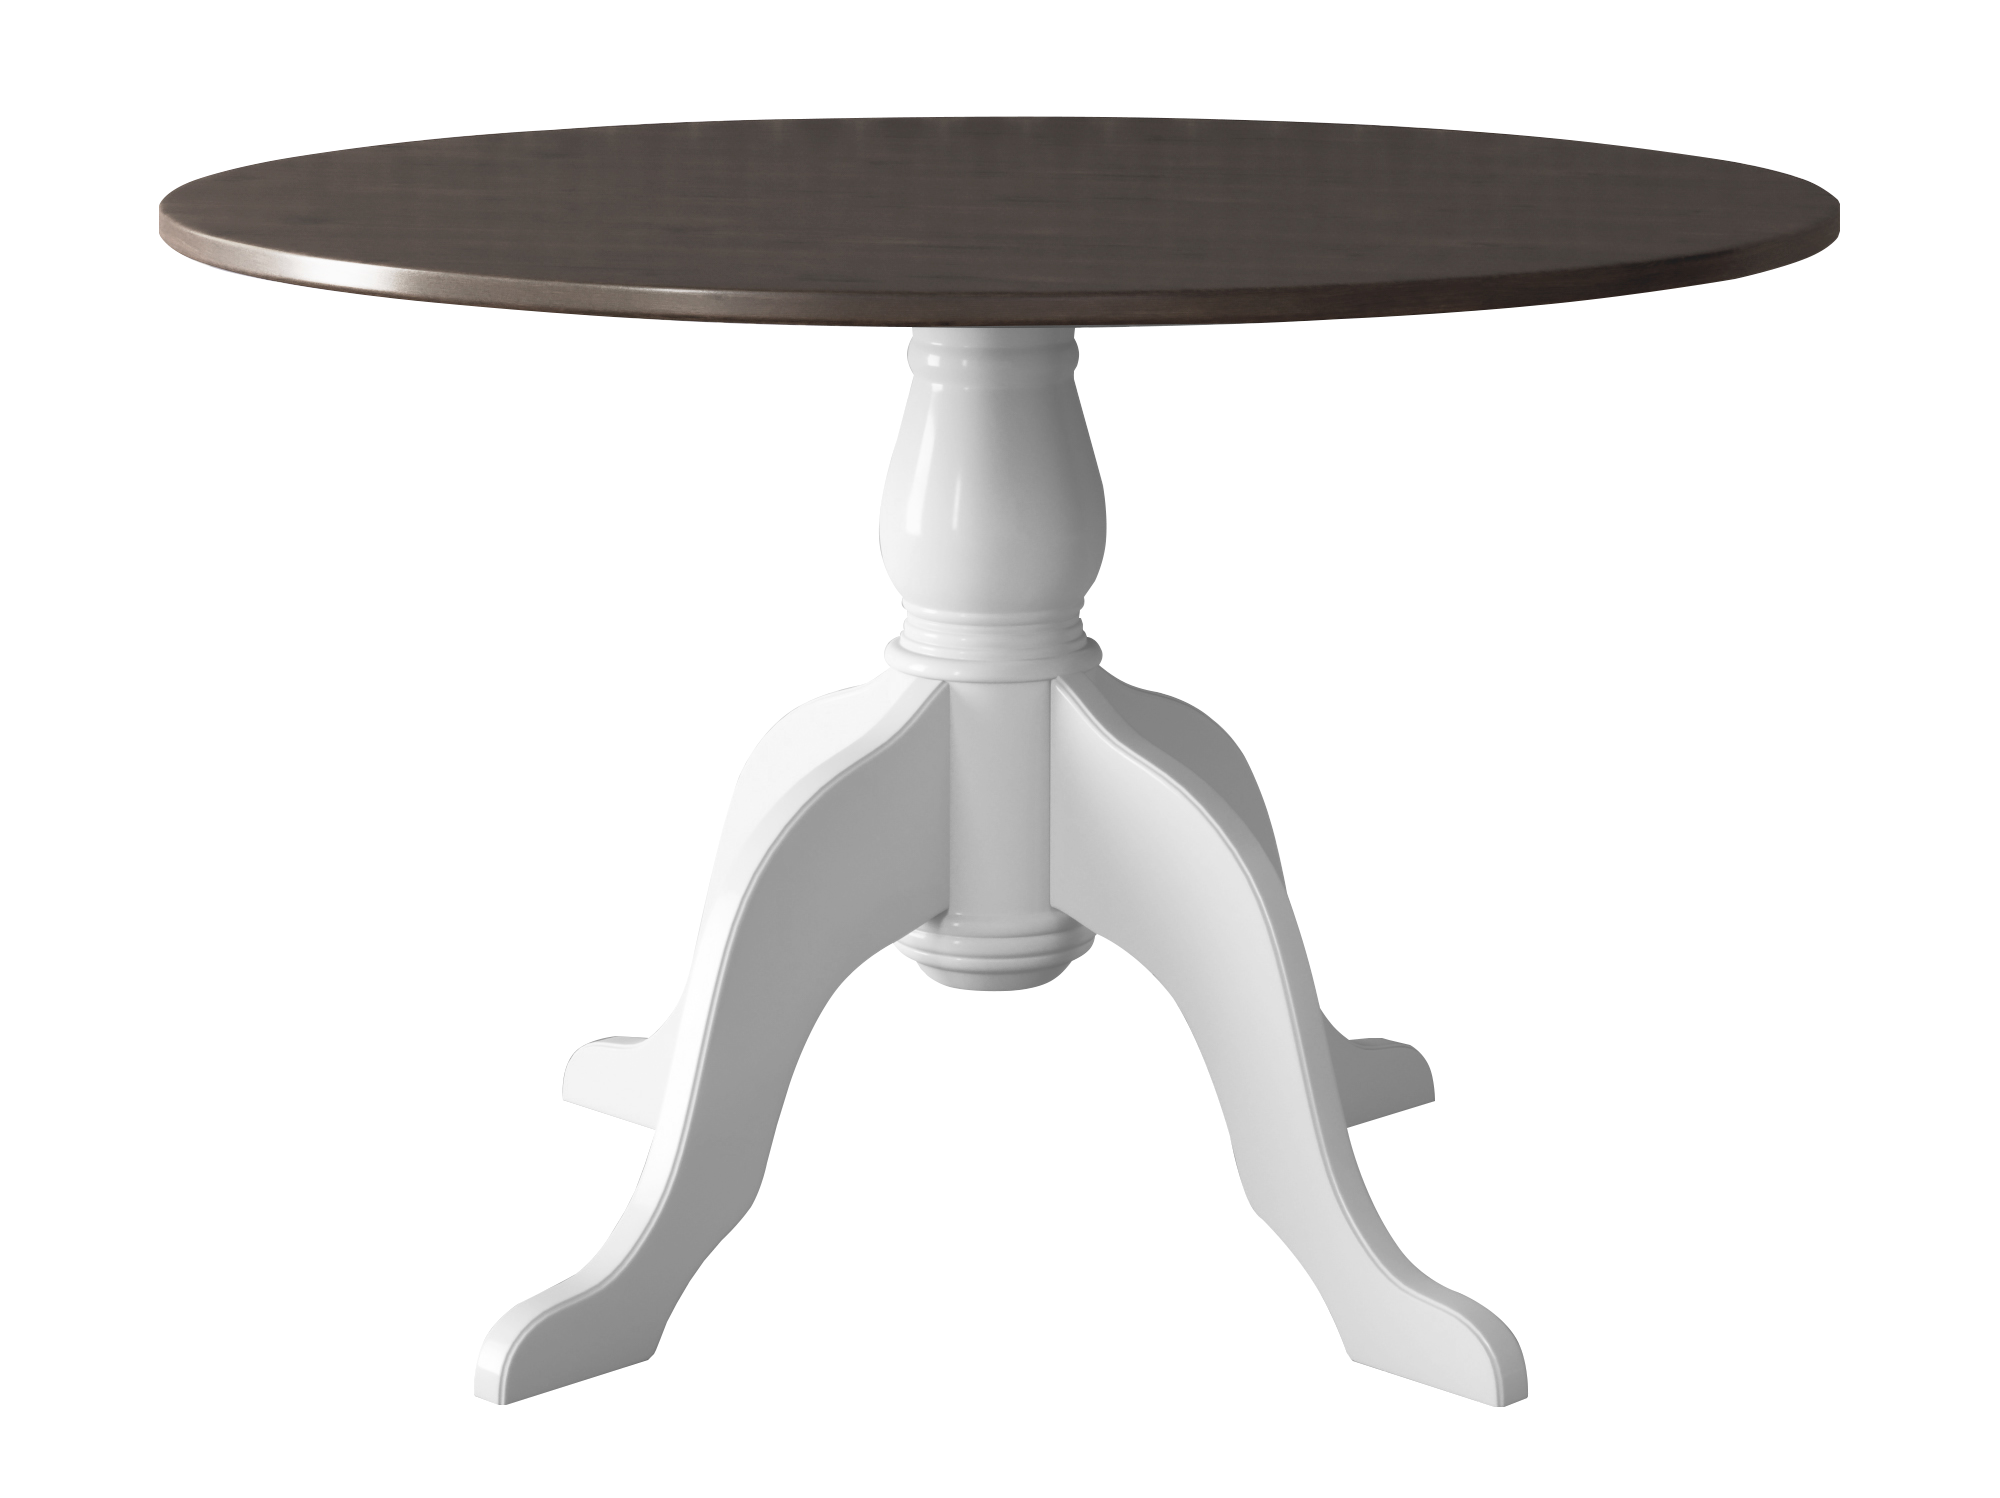 Sussex 48" Round Pedestal Table